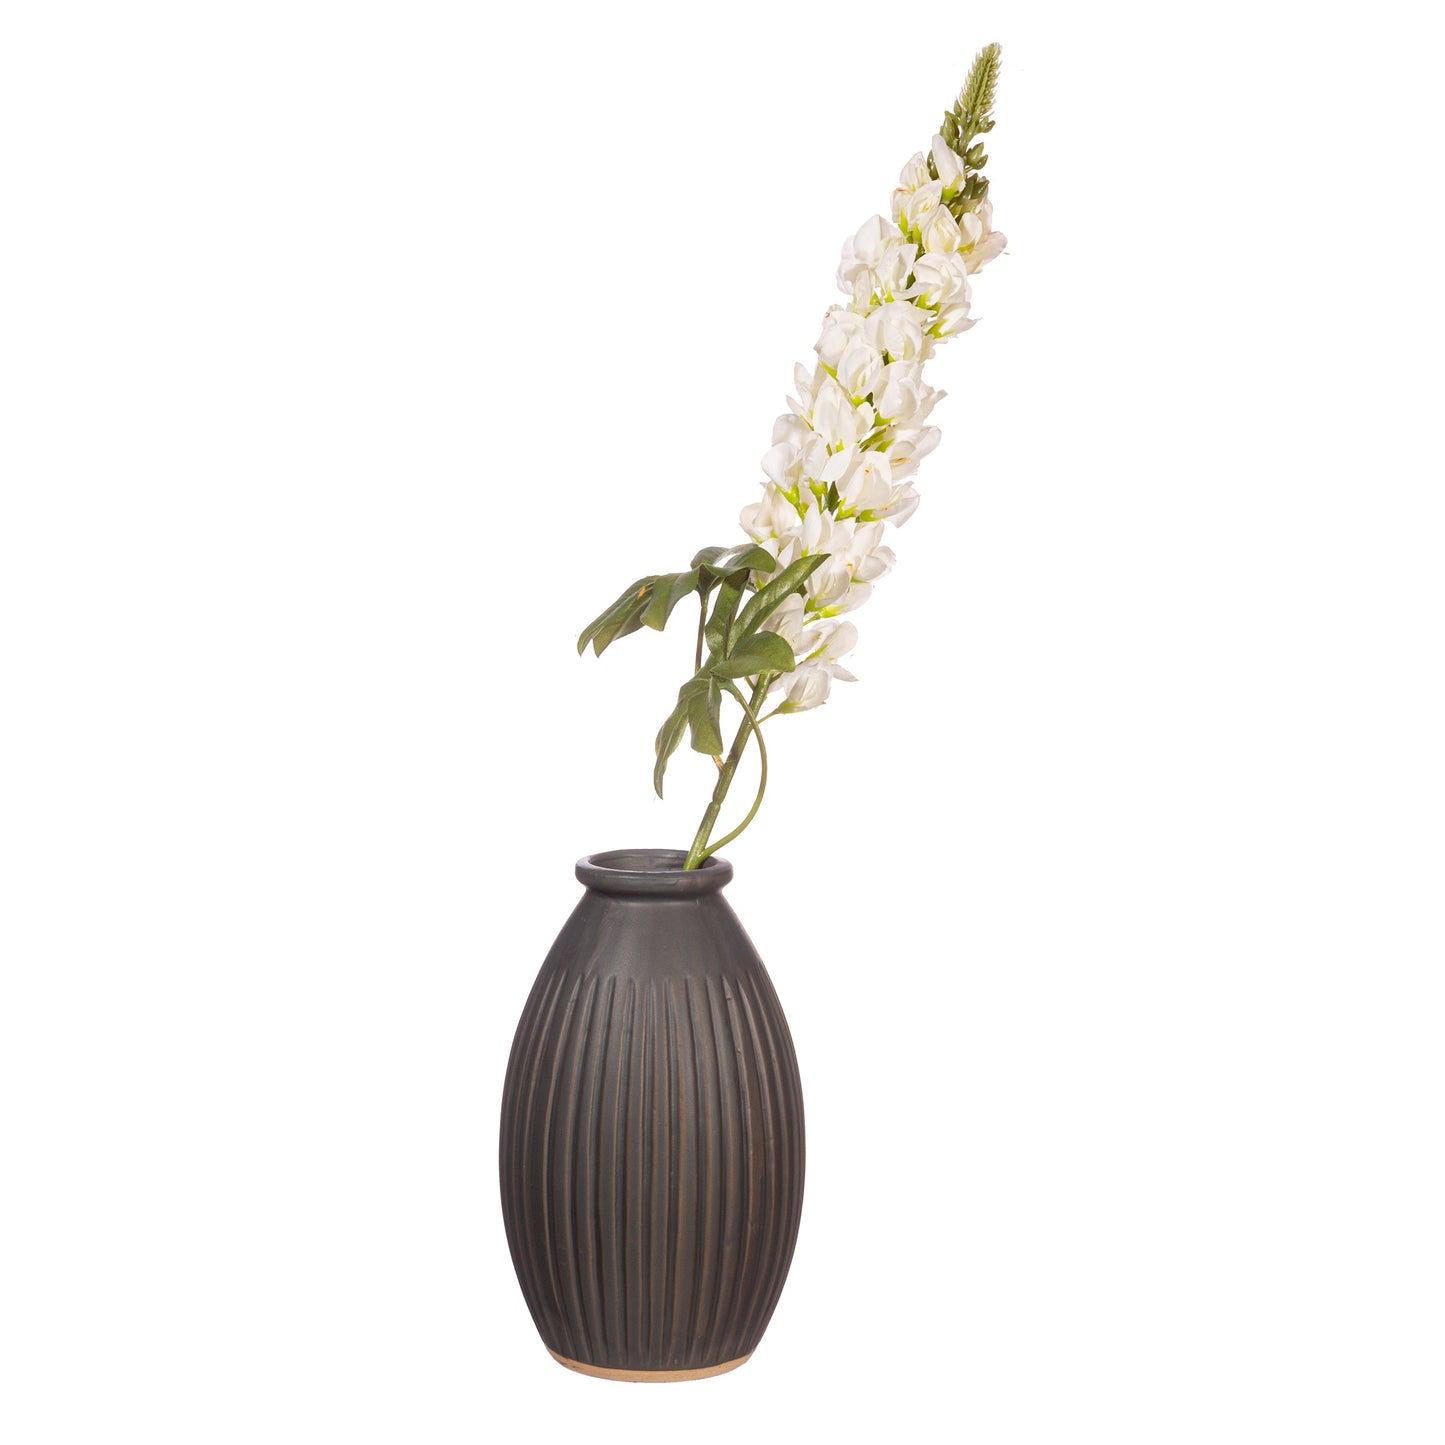 Grooved Vase Large Black